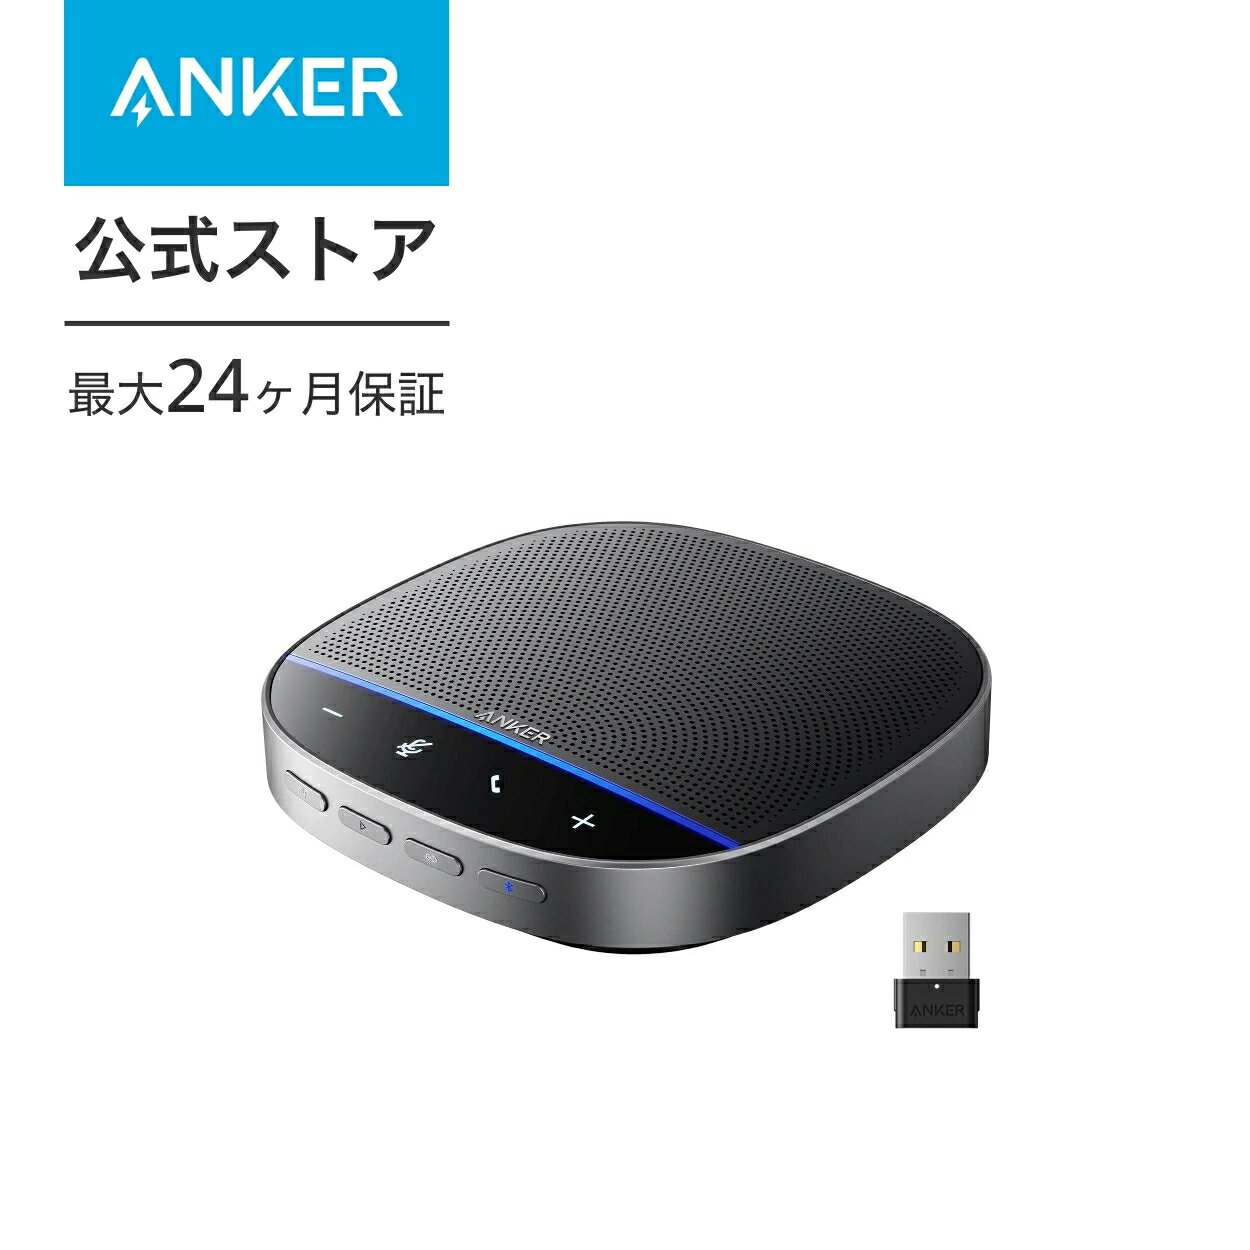 【あす楽対応】Anker PowerConf S500 会議